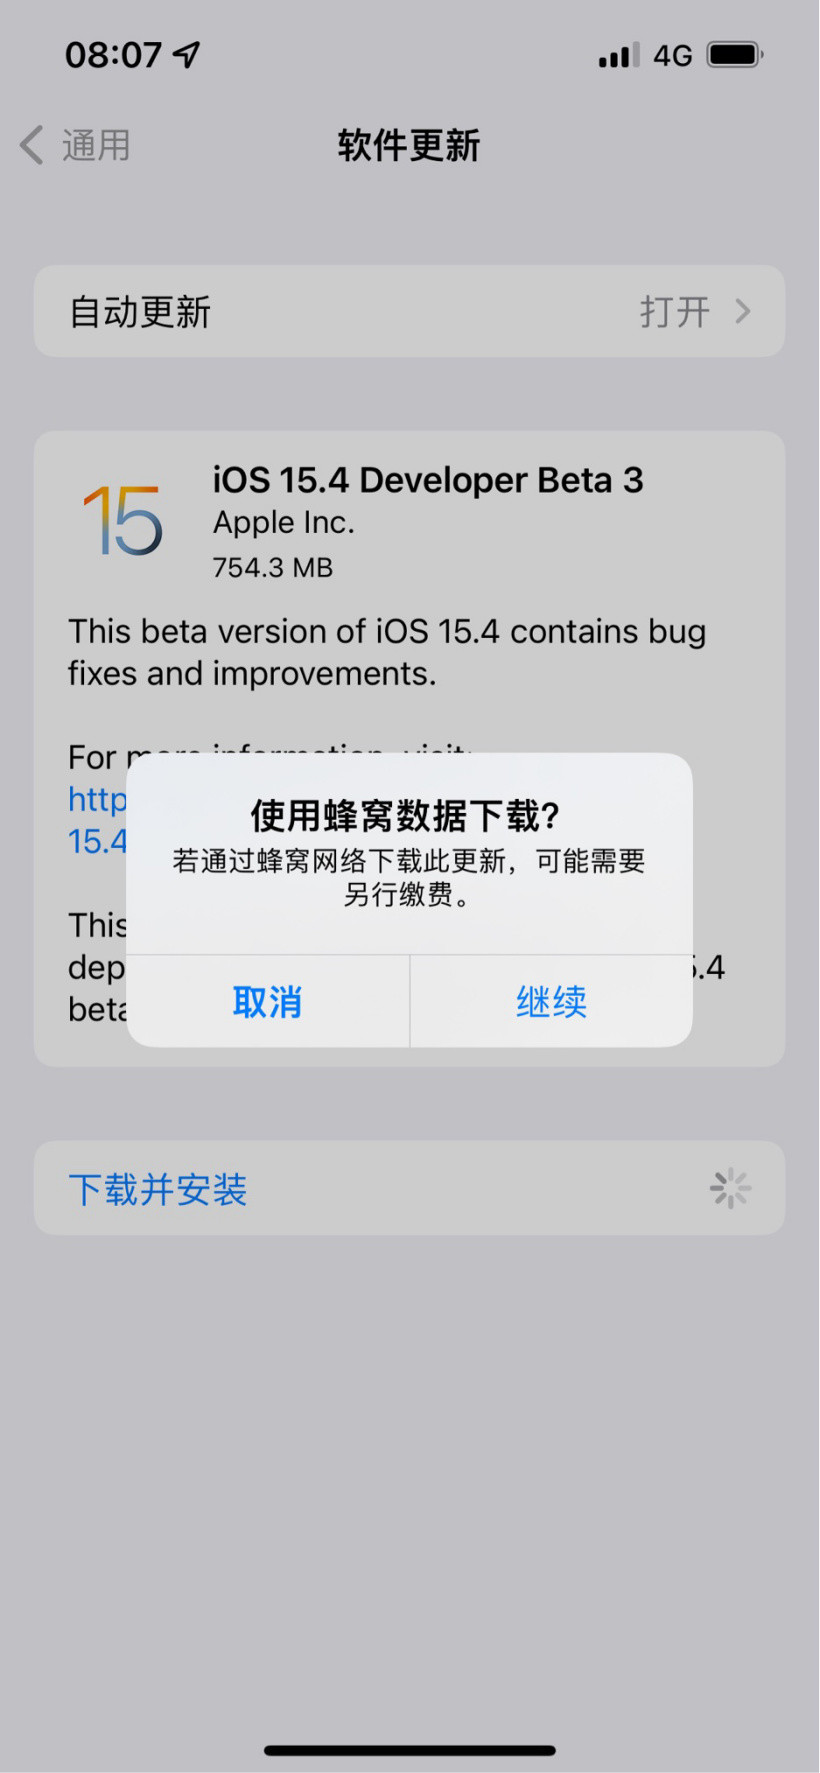 苹果 iOS/ iPadOS 15.4 公测版 Beta 3 发布：支持通用控制、戴口罩 Face ID 等